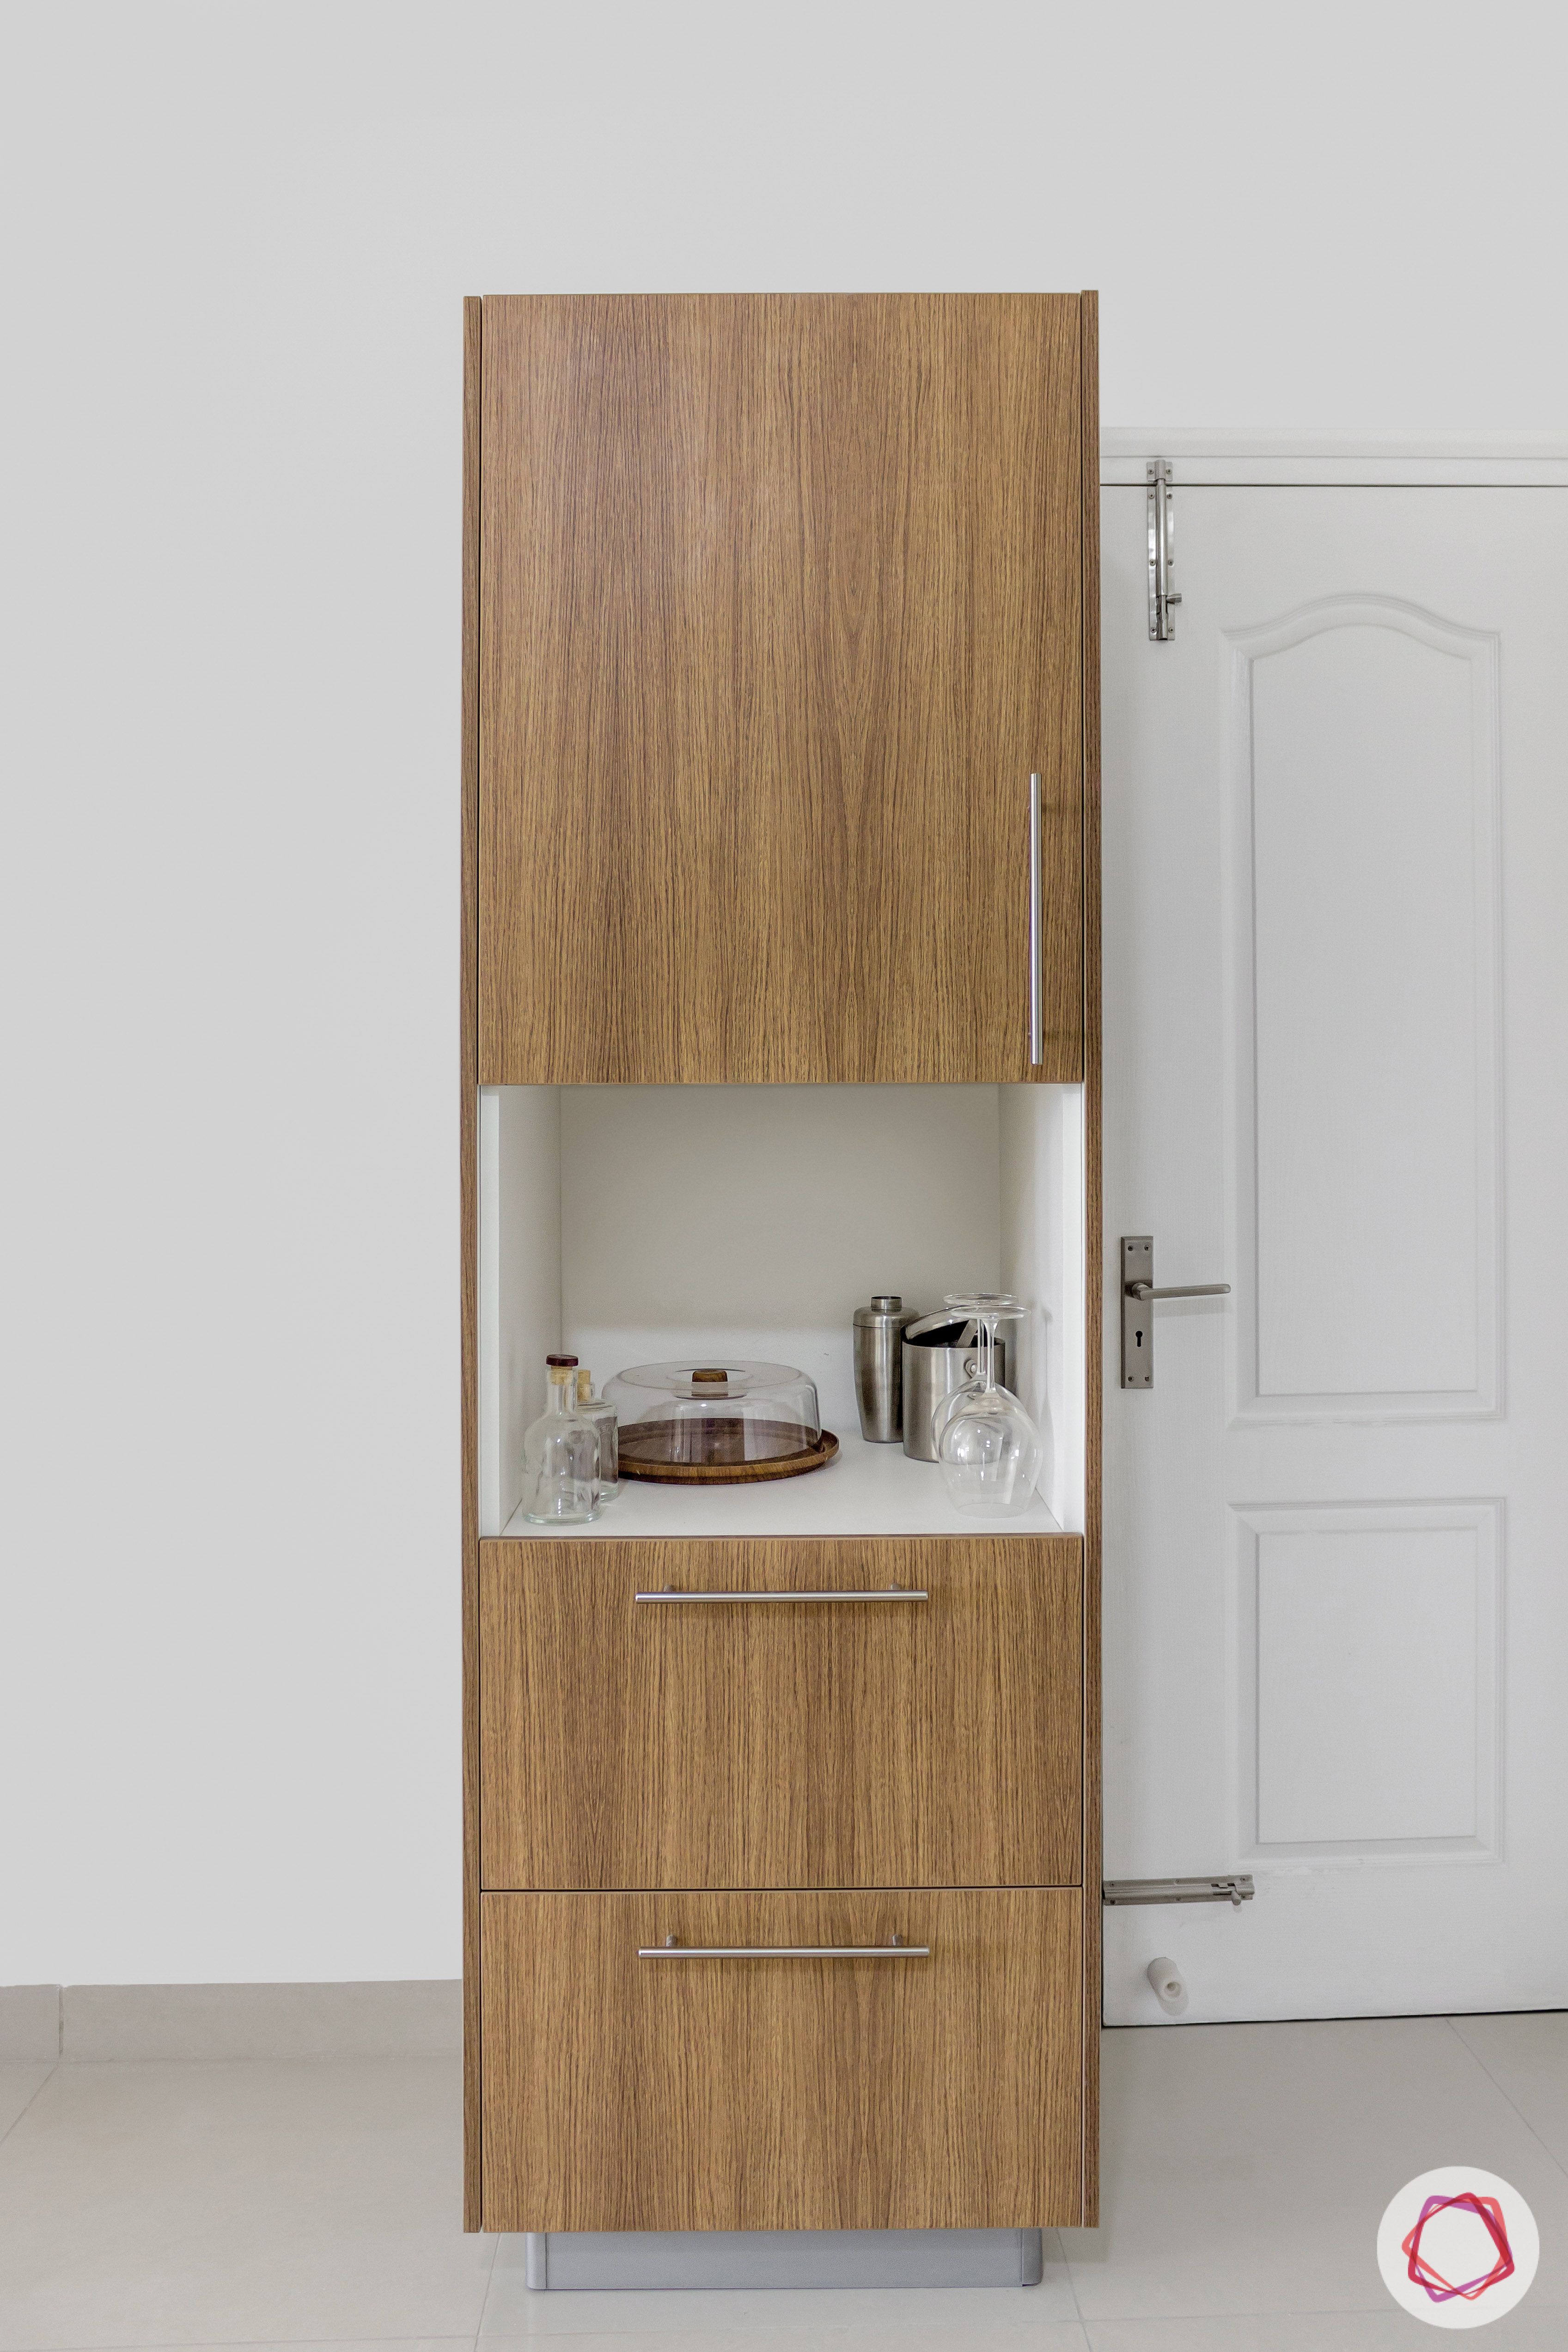 brigade northridge-budget kitchen design-tall cabinet designs